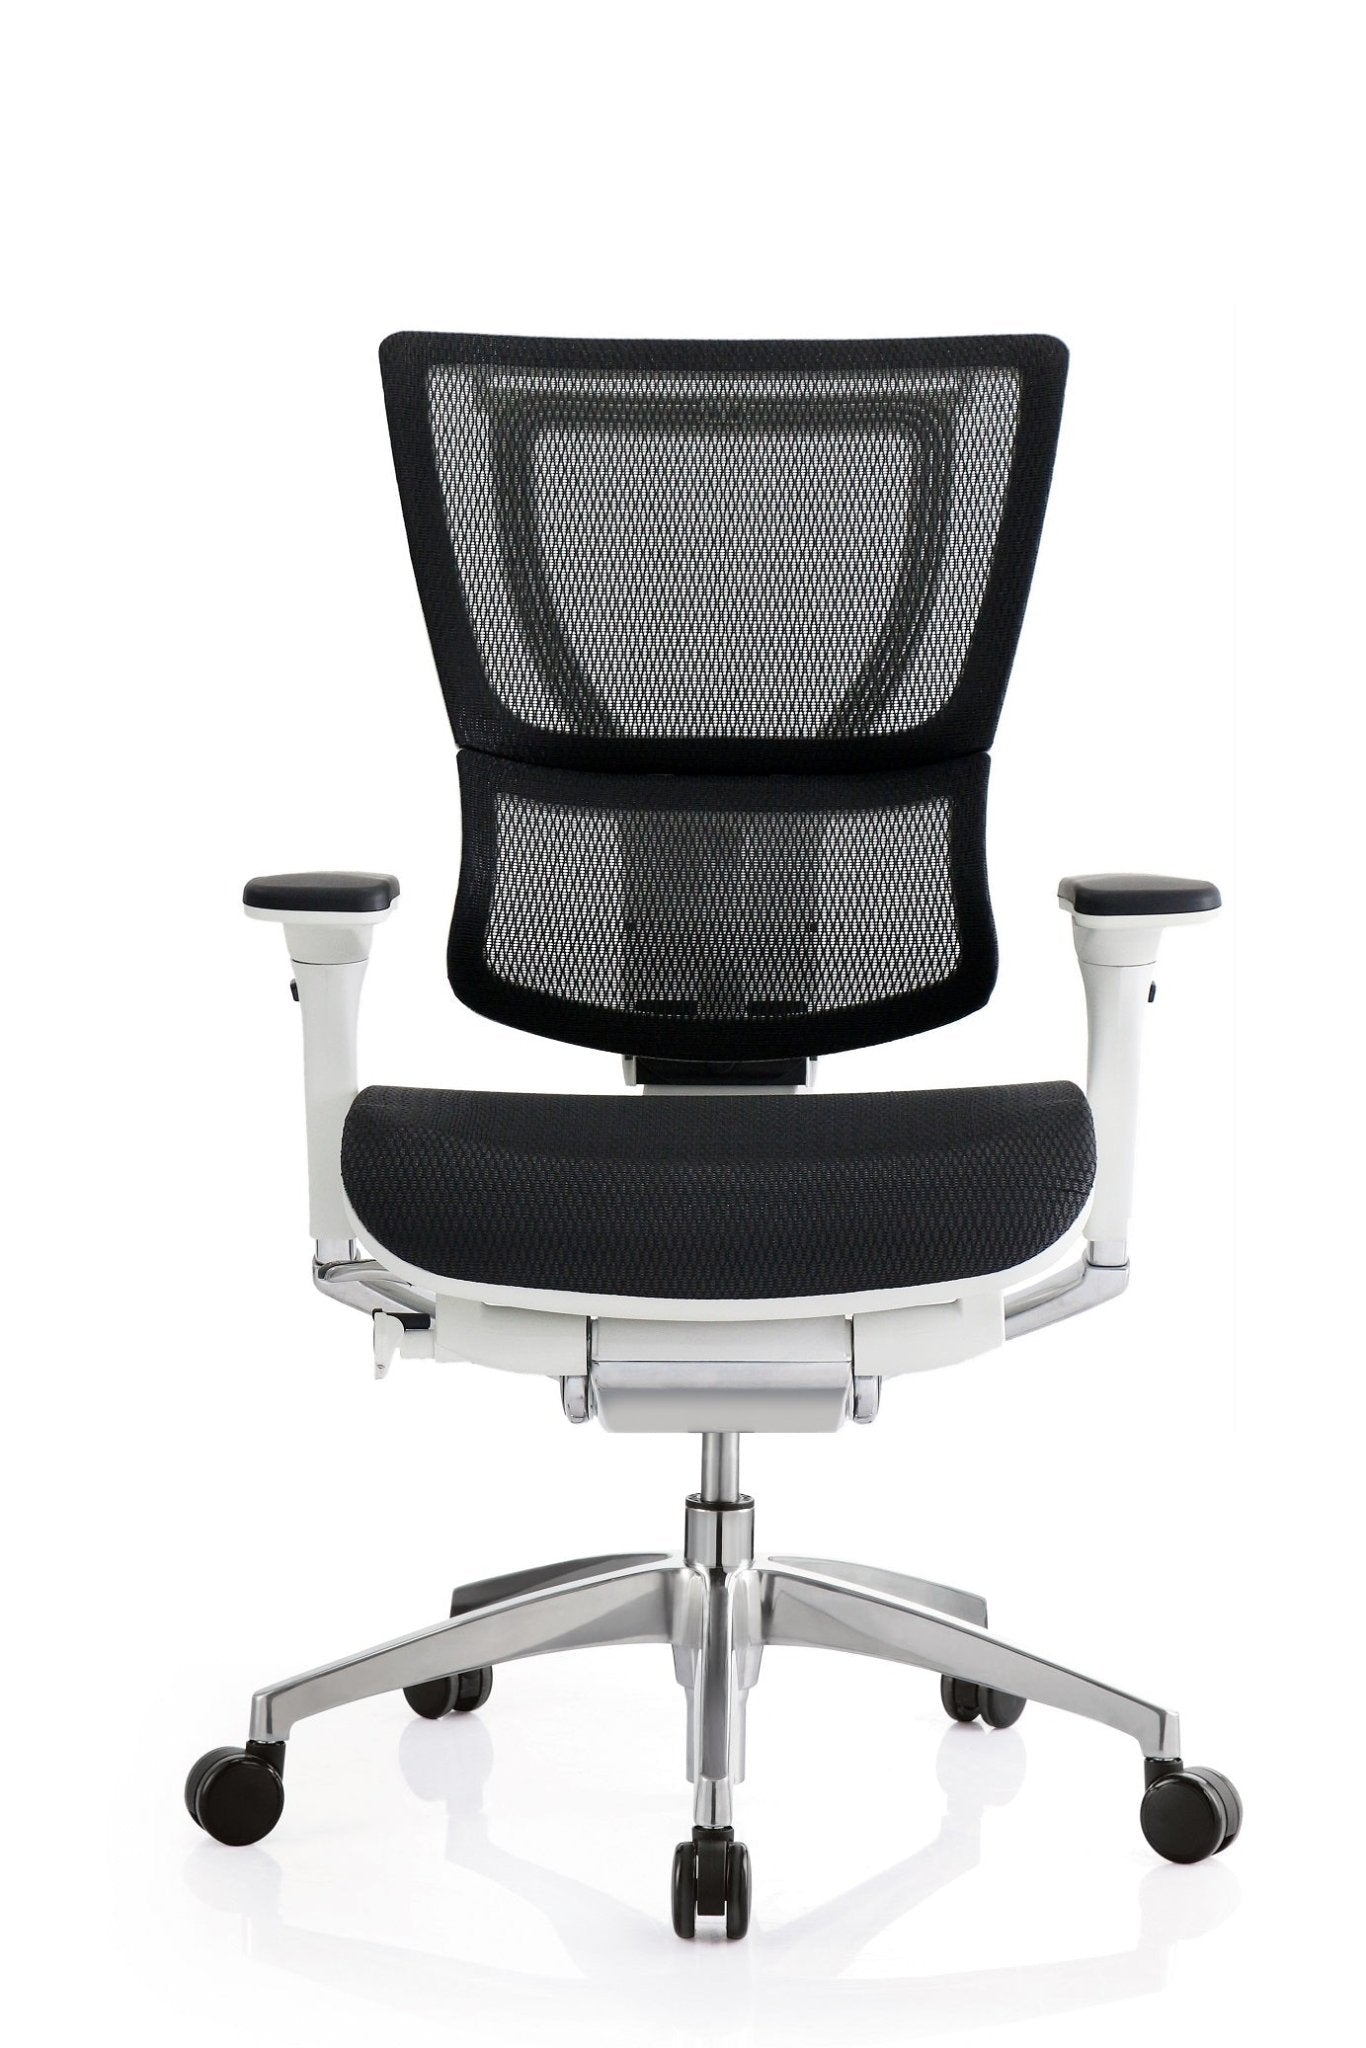 White Mesh Tilt Tension Control Chair 26" x 26" x 40.8"